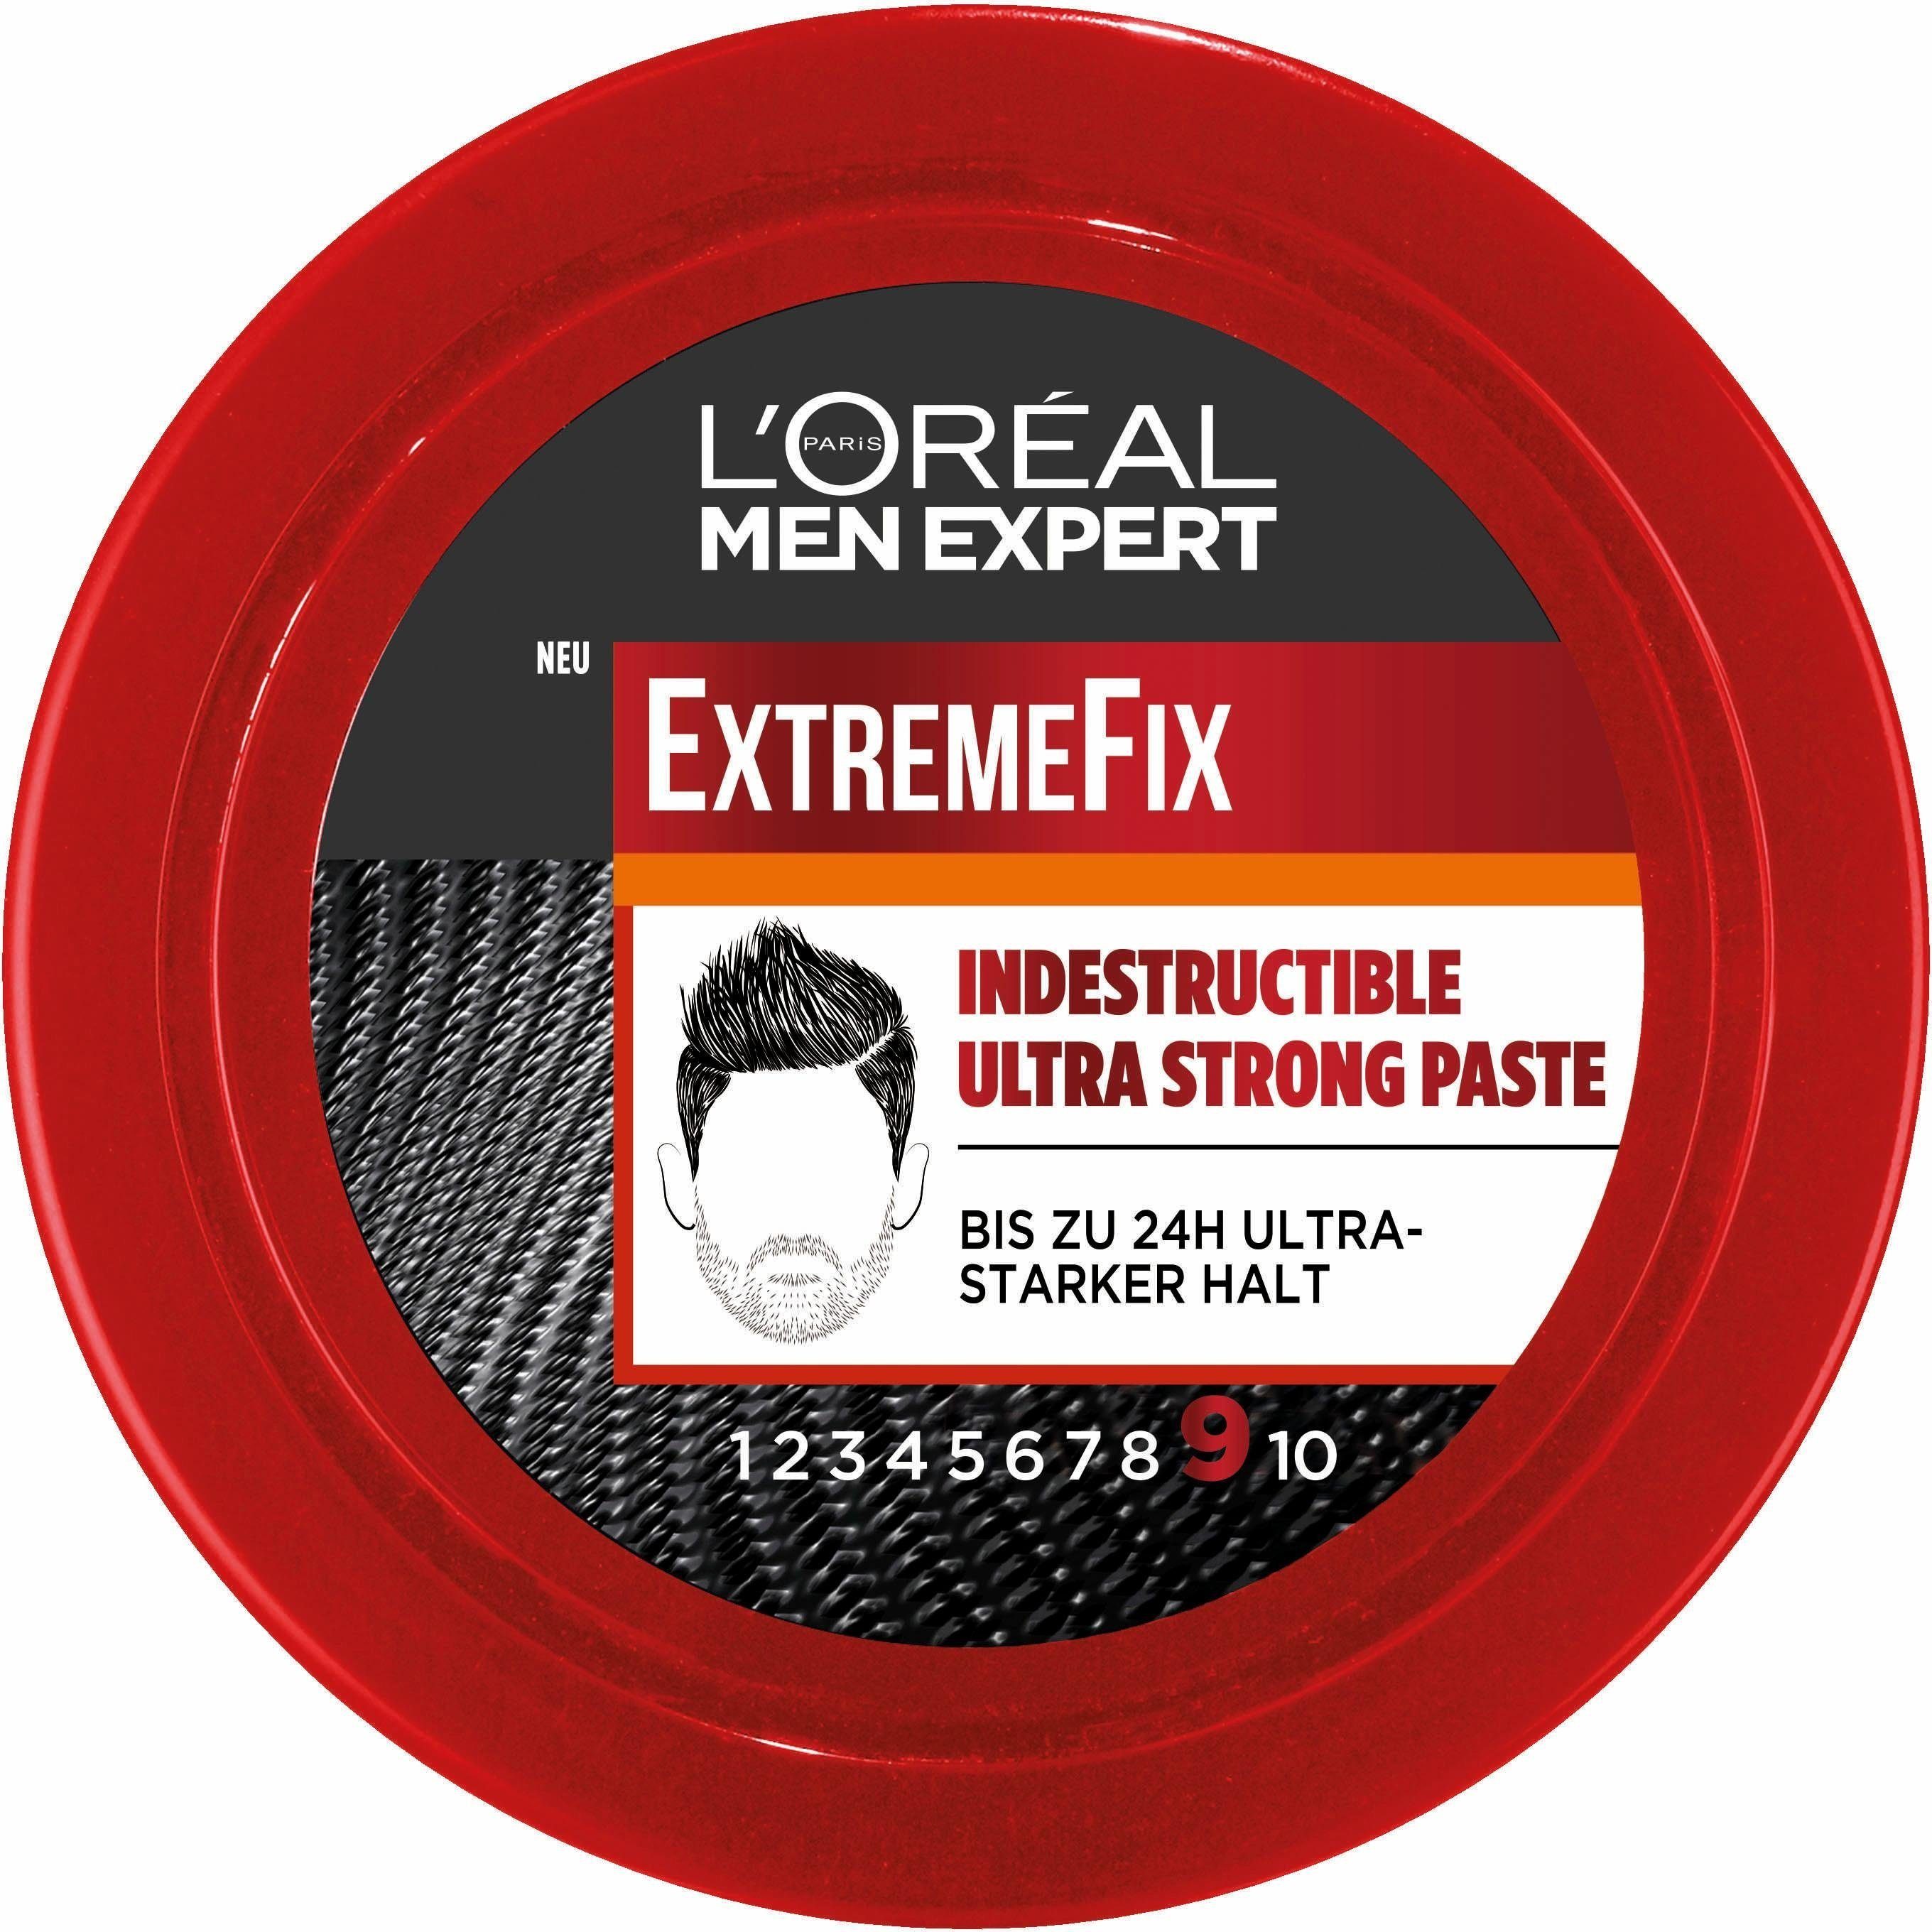 L'ORÉAL PARIS MEN EXPERT Haarpomade Extreme Fix Indestructible Paste